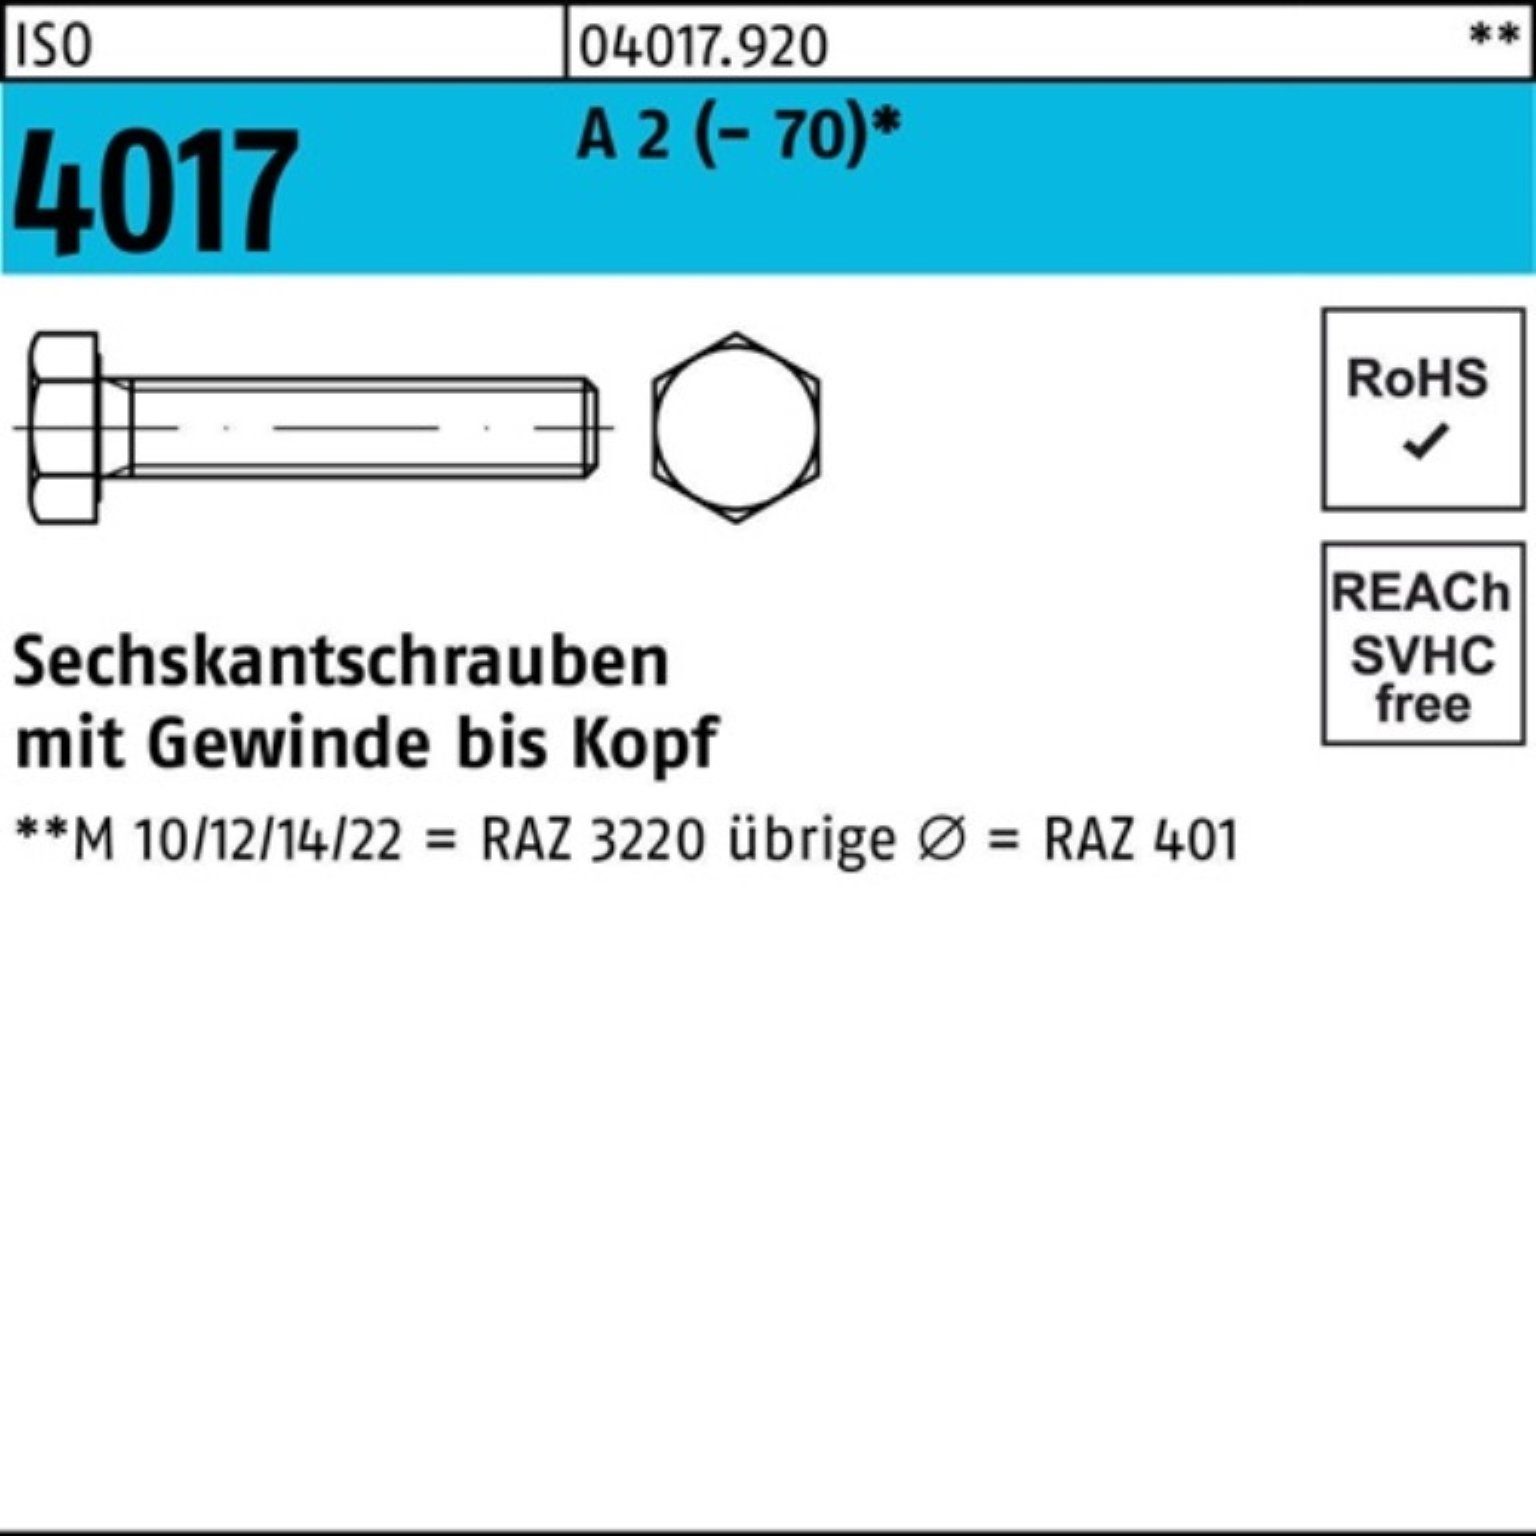 Bufab Sechskantschraube 100er Pack Sechskantschraube ISO 4017 VG M16x 200 A 2 (70) 10 Stück